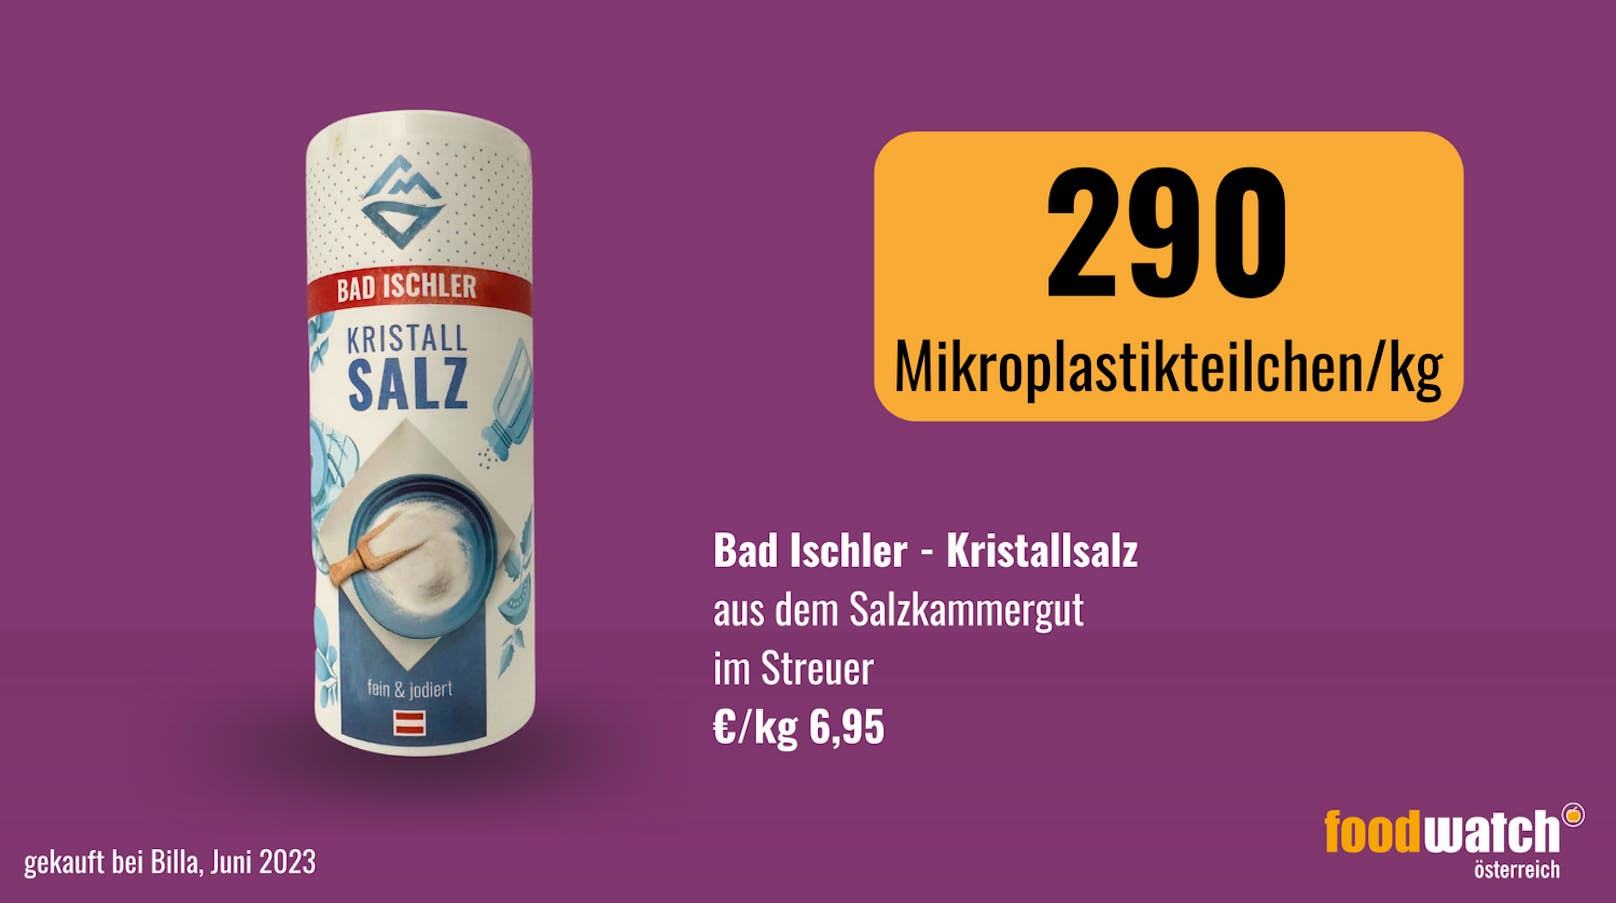 Das Bad Ischler Kristallsalz wies 290 Partikel/kg auf.